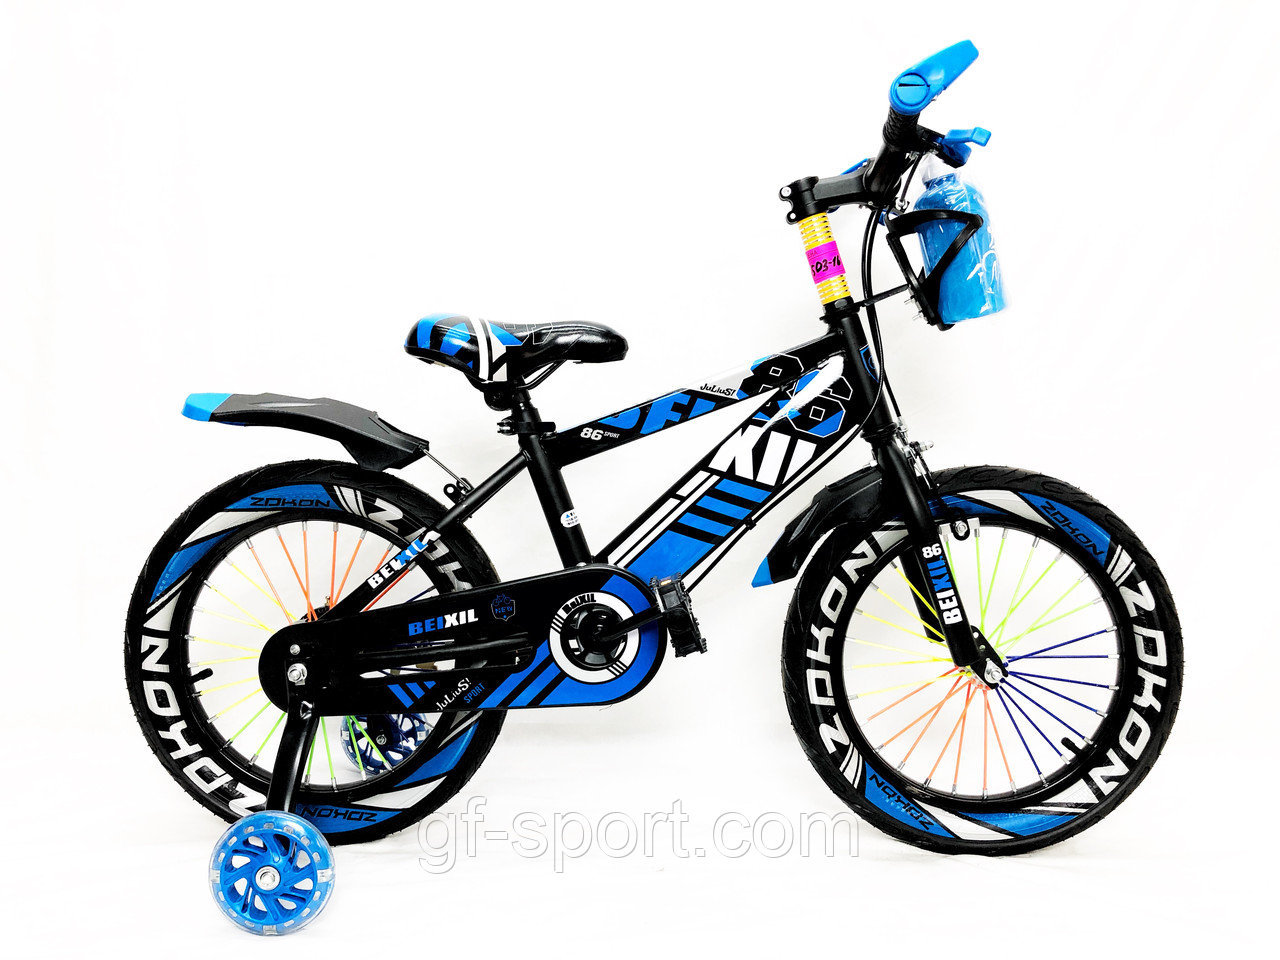 Велосипед BeixiL синий оригинал детский с холостым ходом 16 размер (503-16)